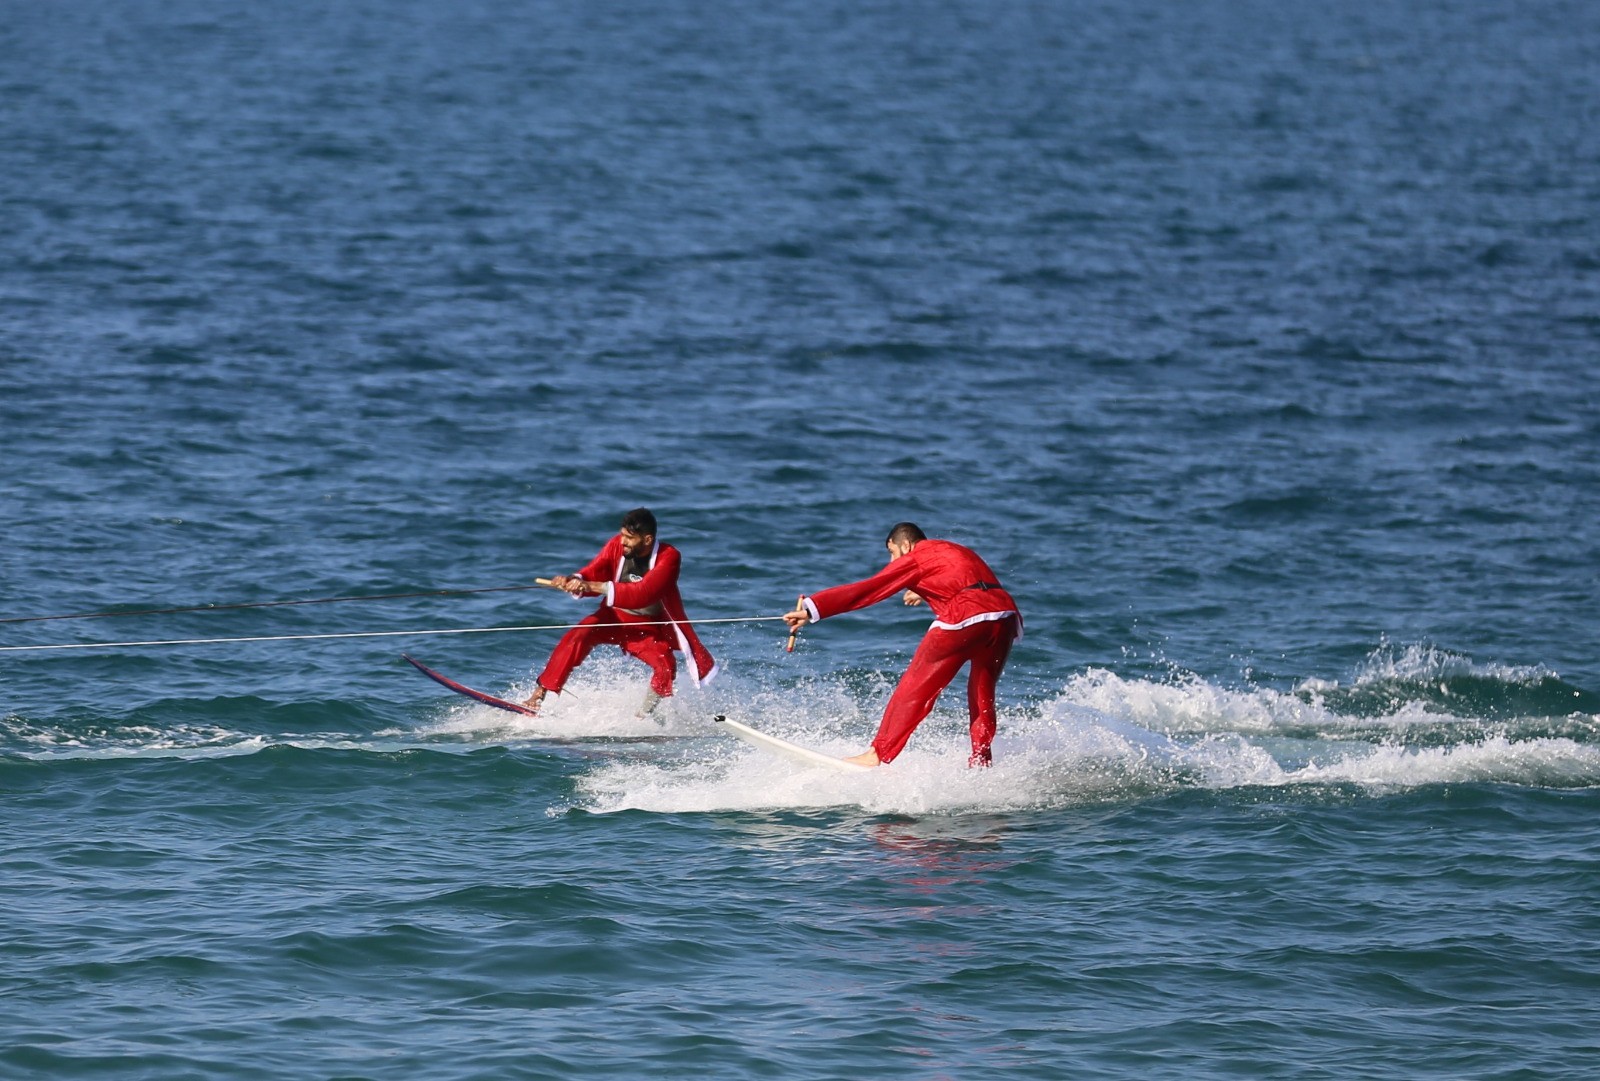 الاتحاد الفلسطيني للشراع والتجديف ينظّم فعالية للتزلّج على شاطئ بحر غزّة 76.jpg